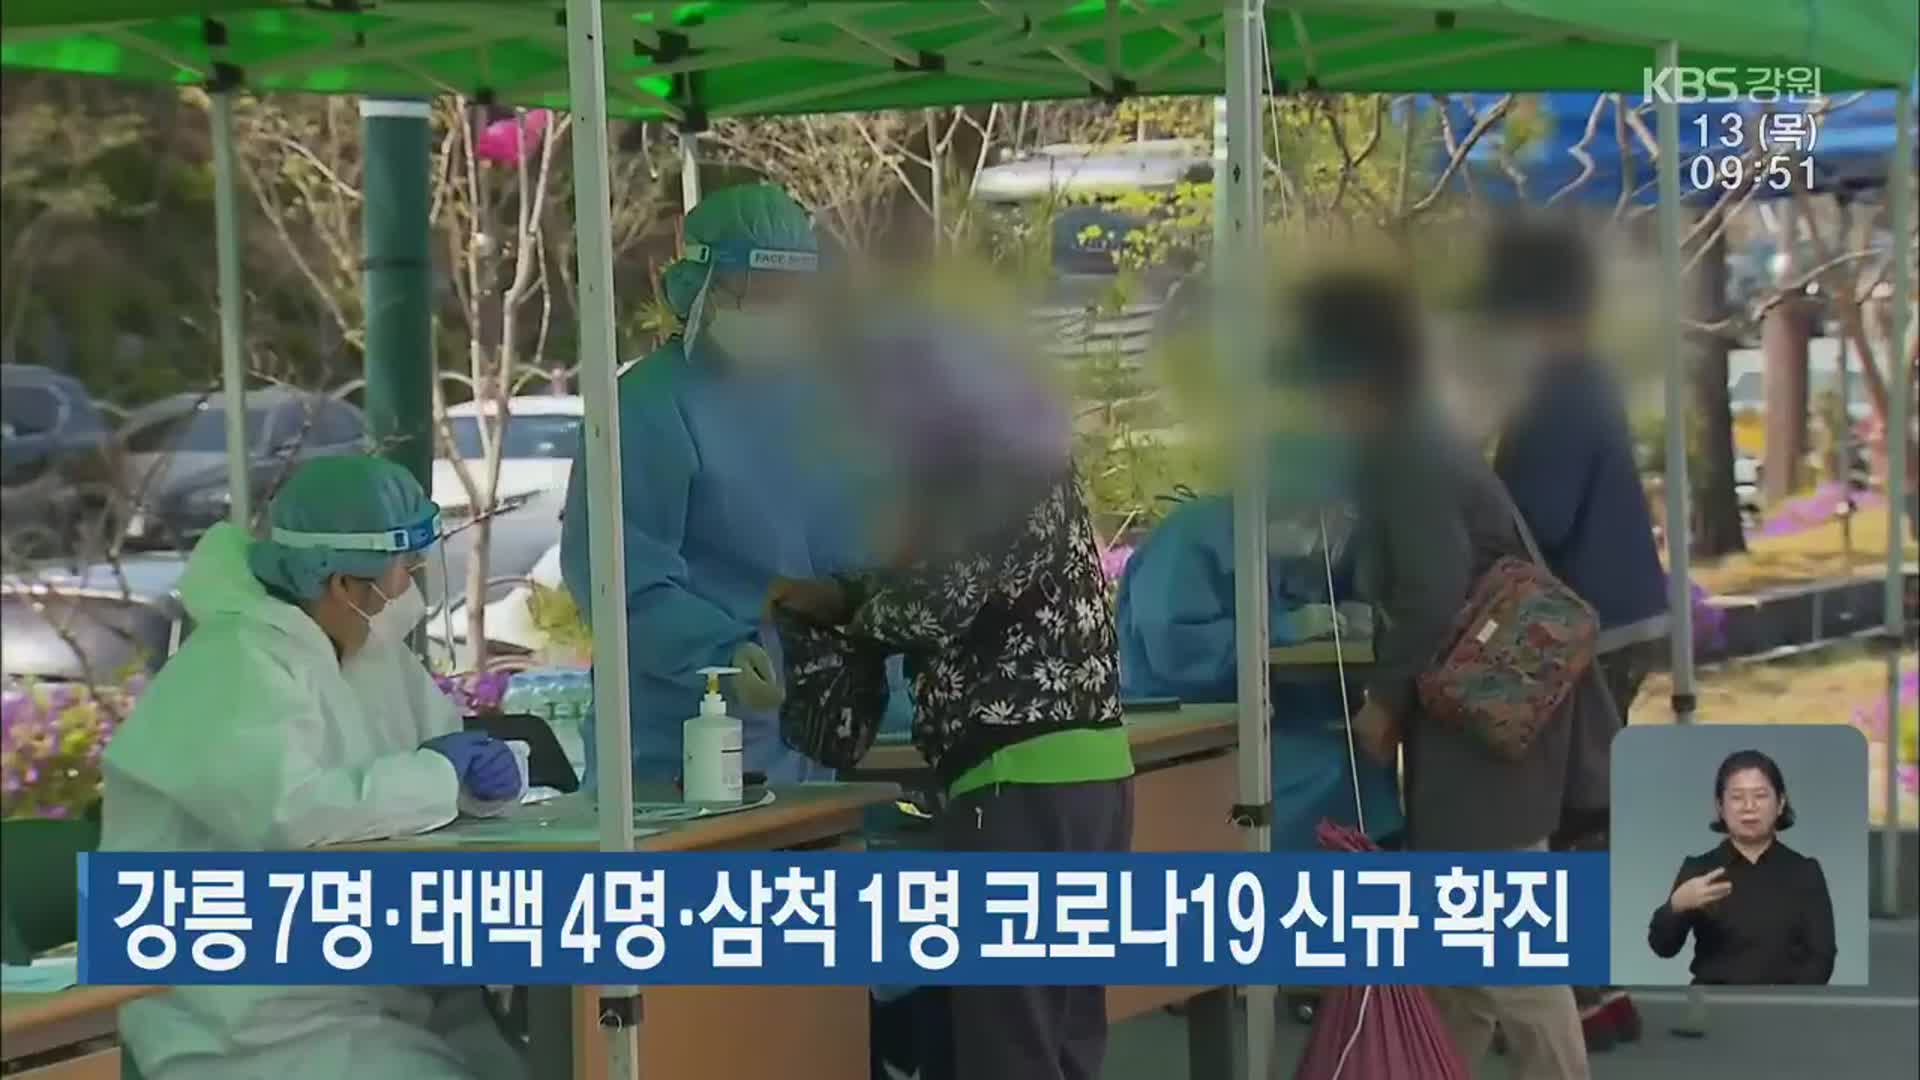 강릉 7명·태백 4명·삼척 1명 코로나19 신규 확진